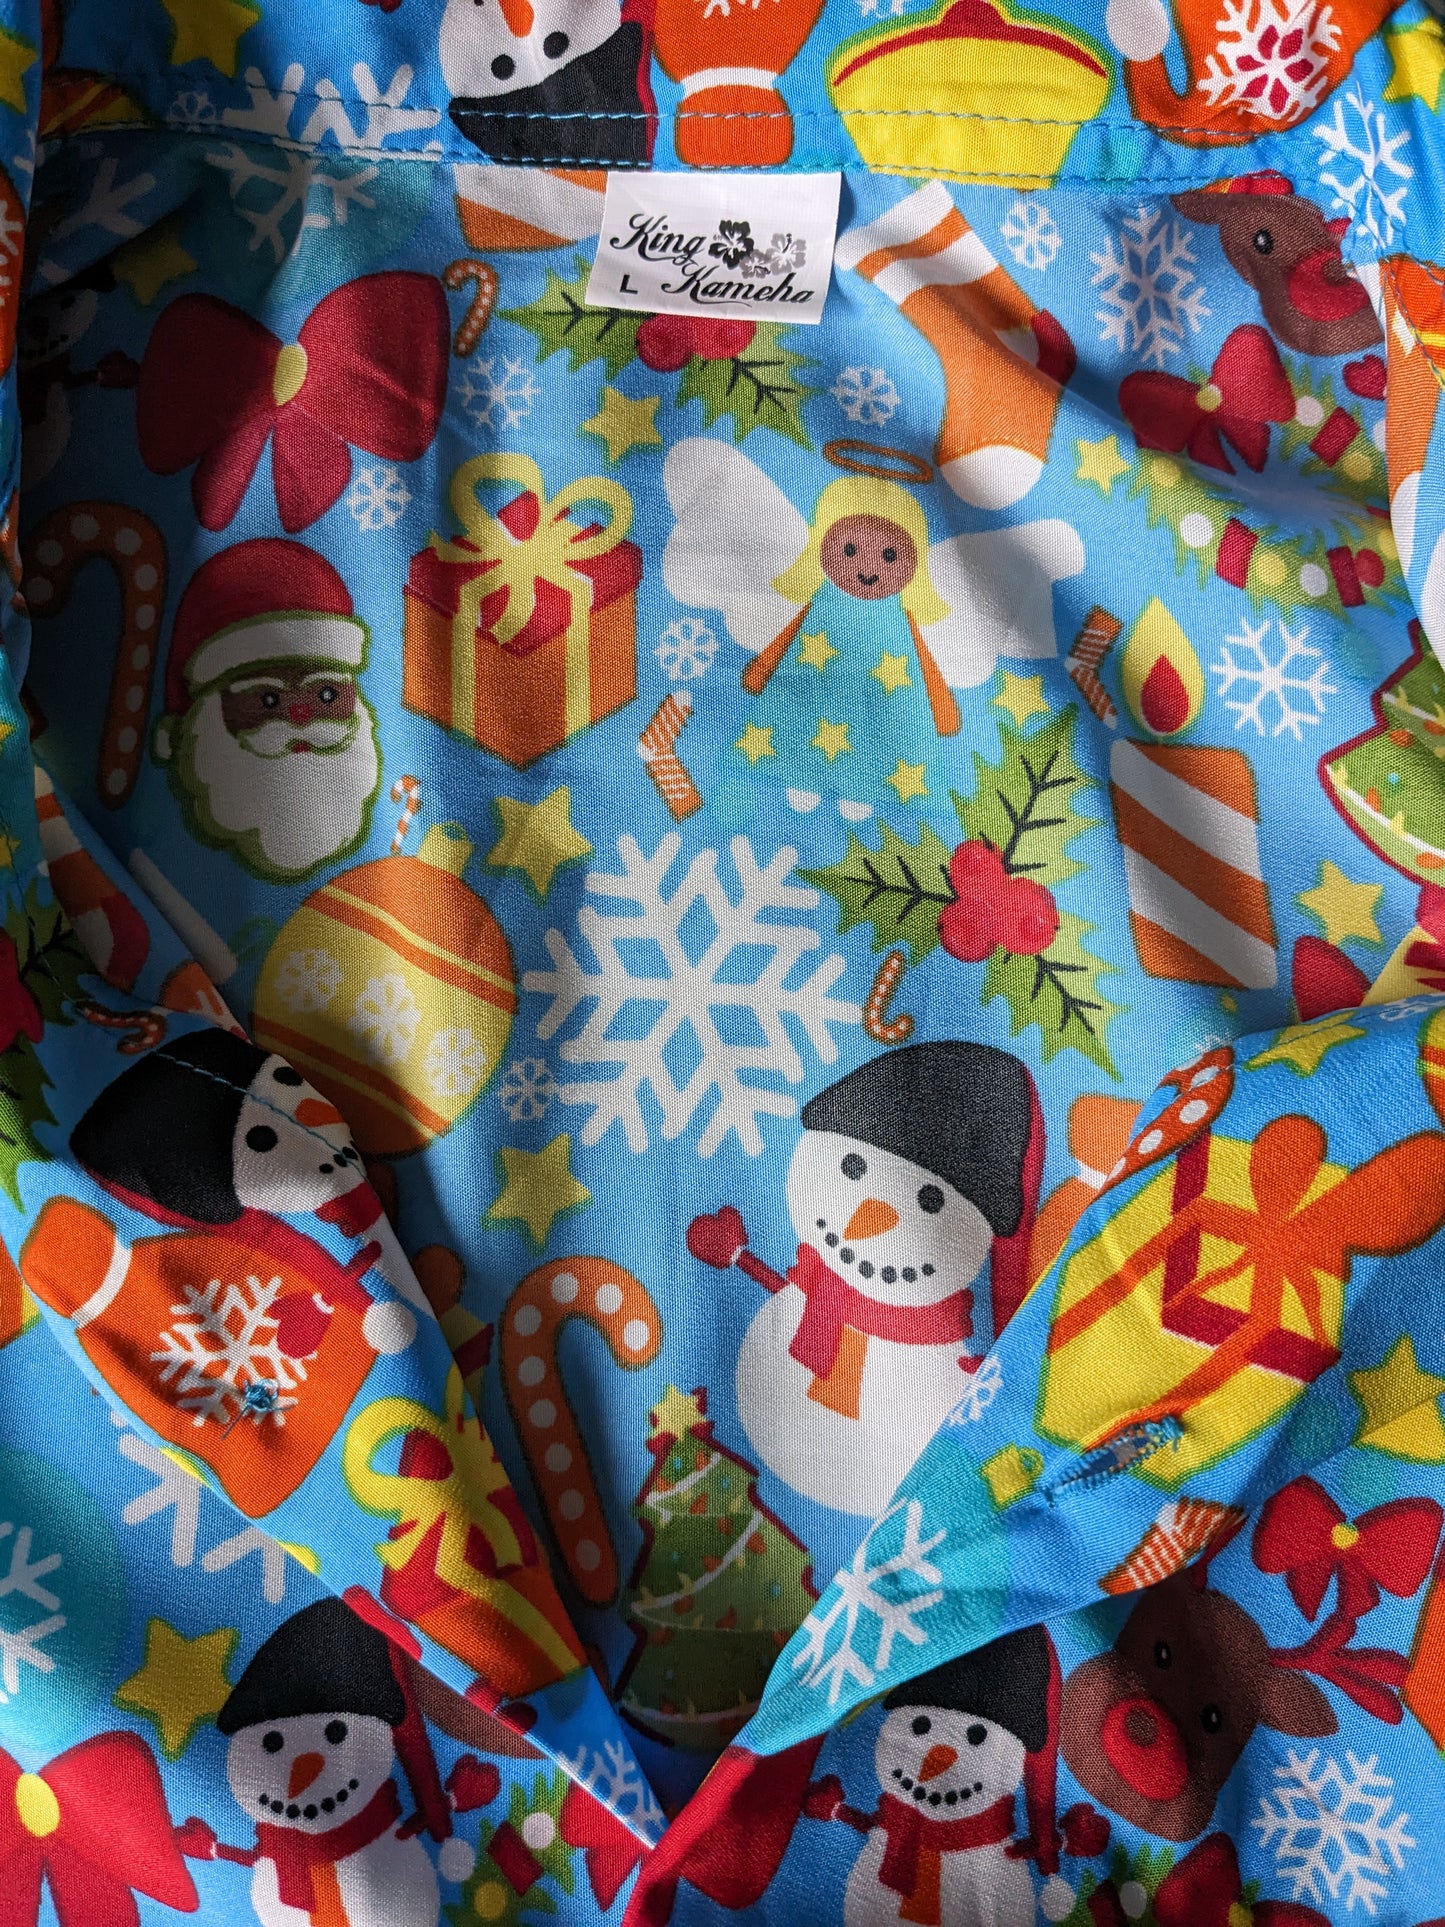 Rey Kameha camisa manga corta. Impresión de Navidad / Invierno. Tamaño L / XL.